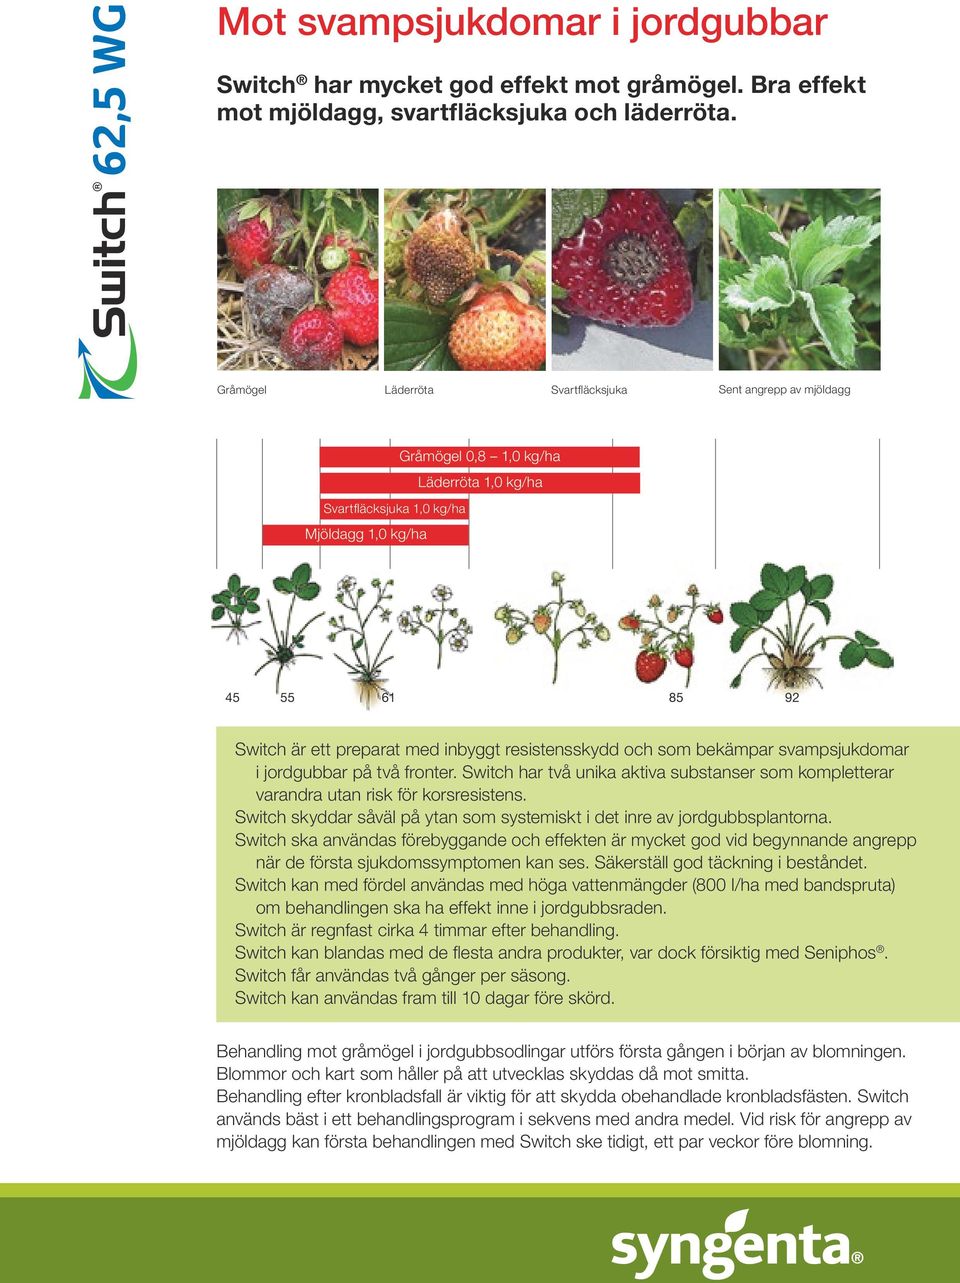 resistensskydd och som bekämpar svampsjukdomar i jordgubbar på två fronter. Switch har två unika aktiva substanser som kompletterar varandra utan risk för korsresistens.